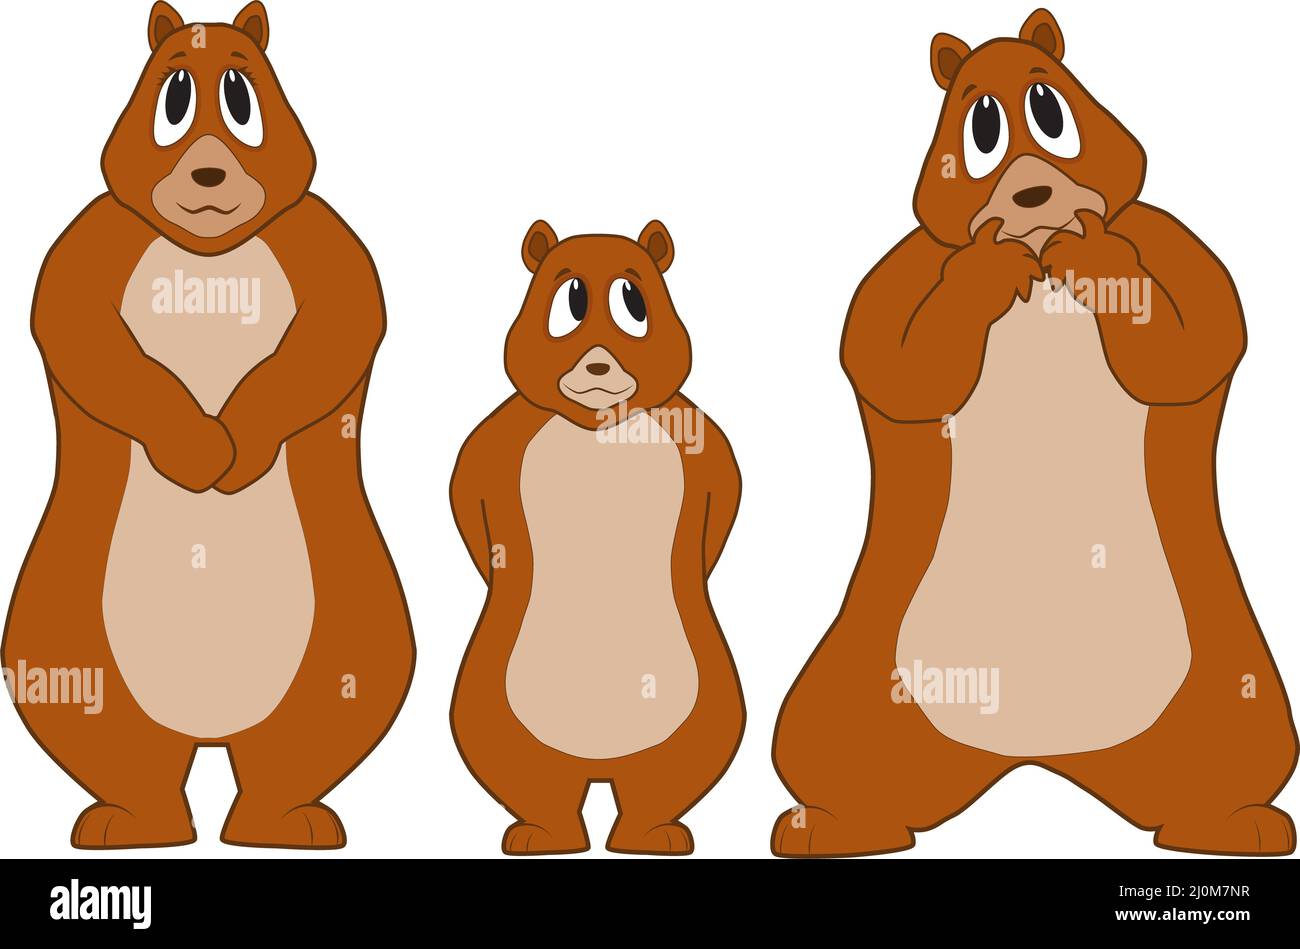 Cartoon of a bear family and a silly papa bear Stock Photo - Alamy